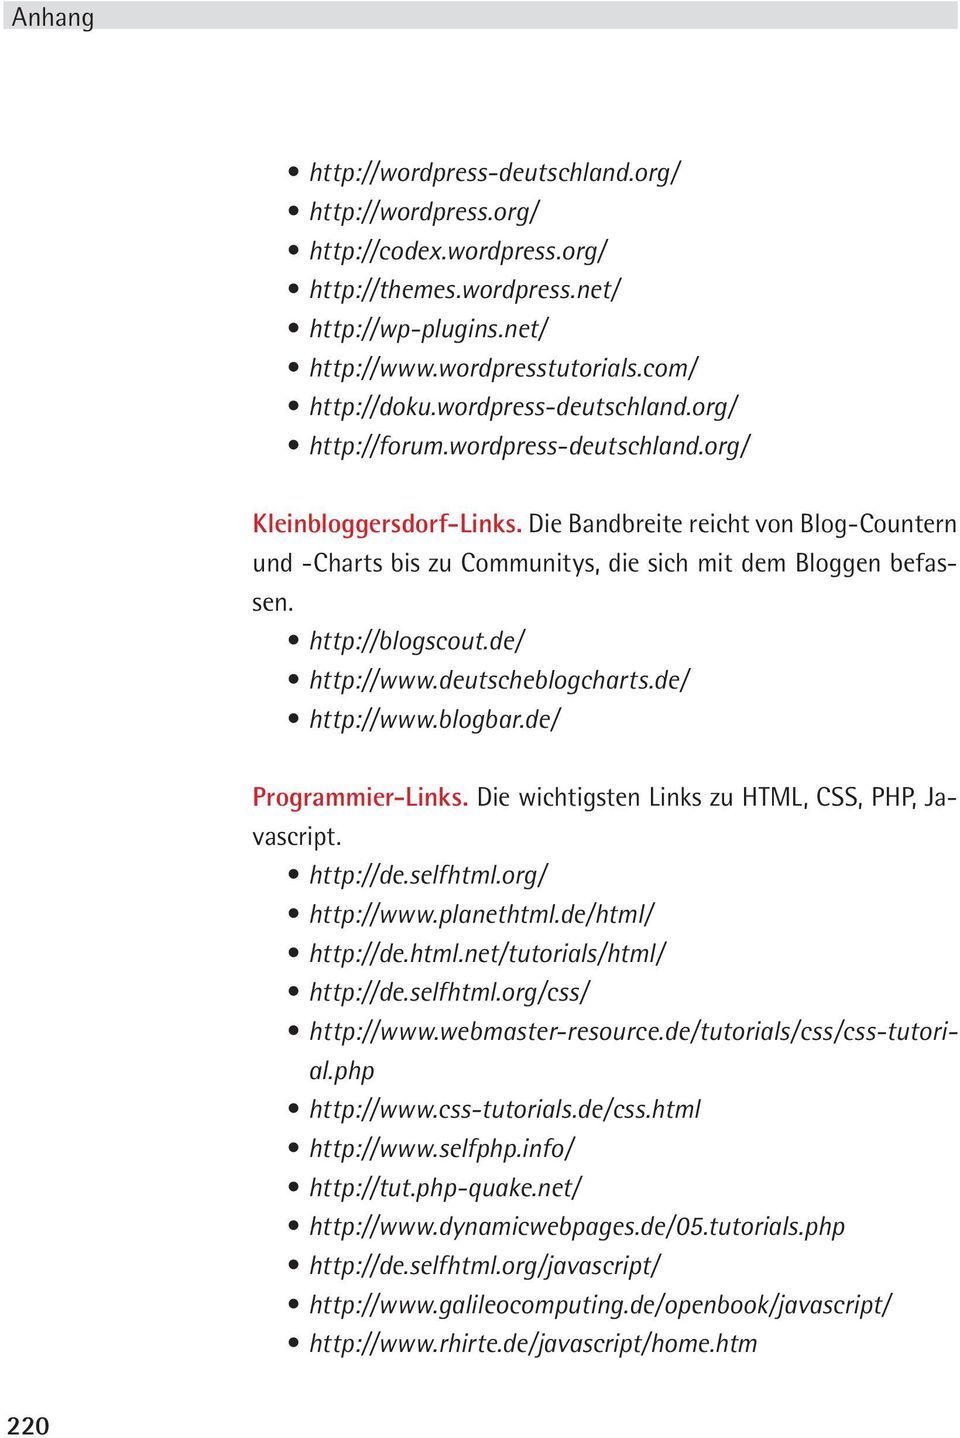 http://blogscout.de/ http://www.deutscheblogcharts.de/ http://www.blogbar.de/ Programmier-Links. vascript. http://de.selfhtml.org/ http://www.planethtml.de/html/ http://de.html.net/tutorials/html/ http://de.